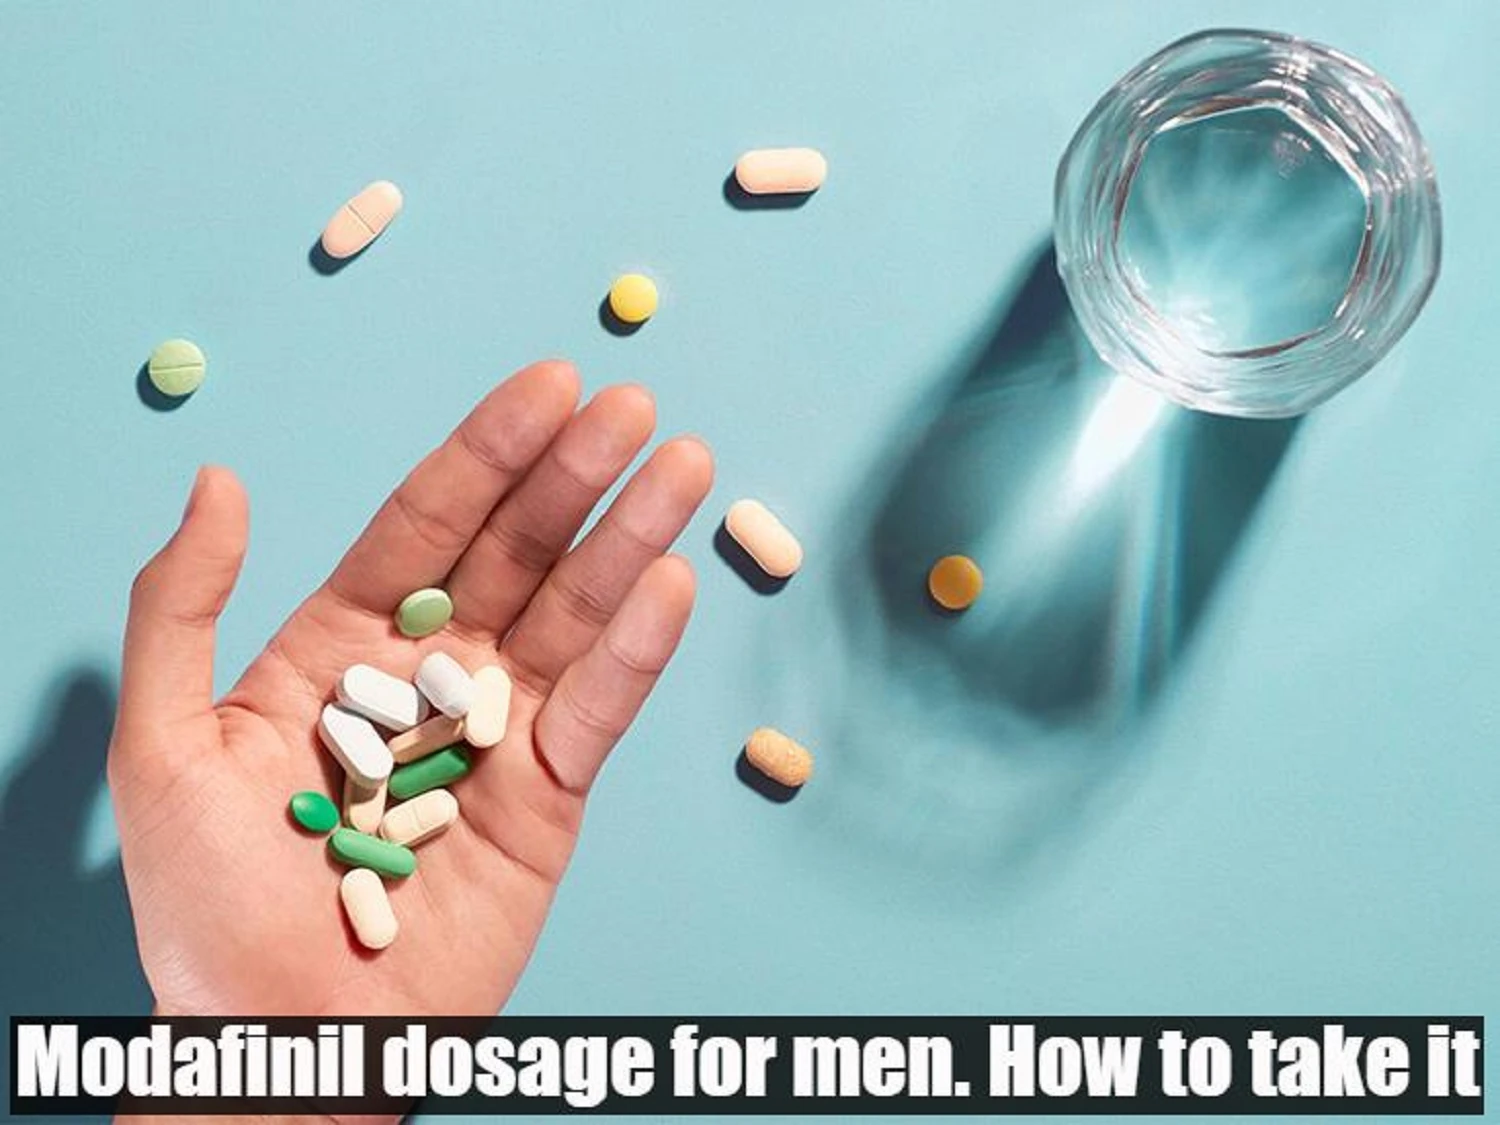 Modafinil dosage for men